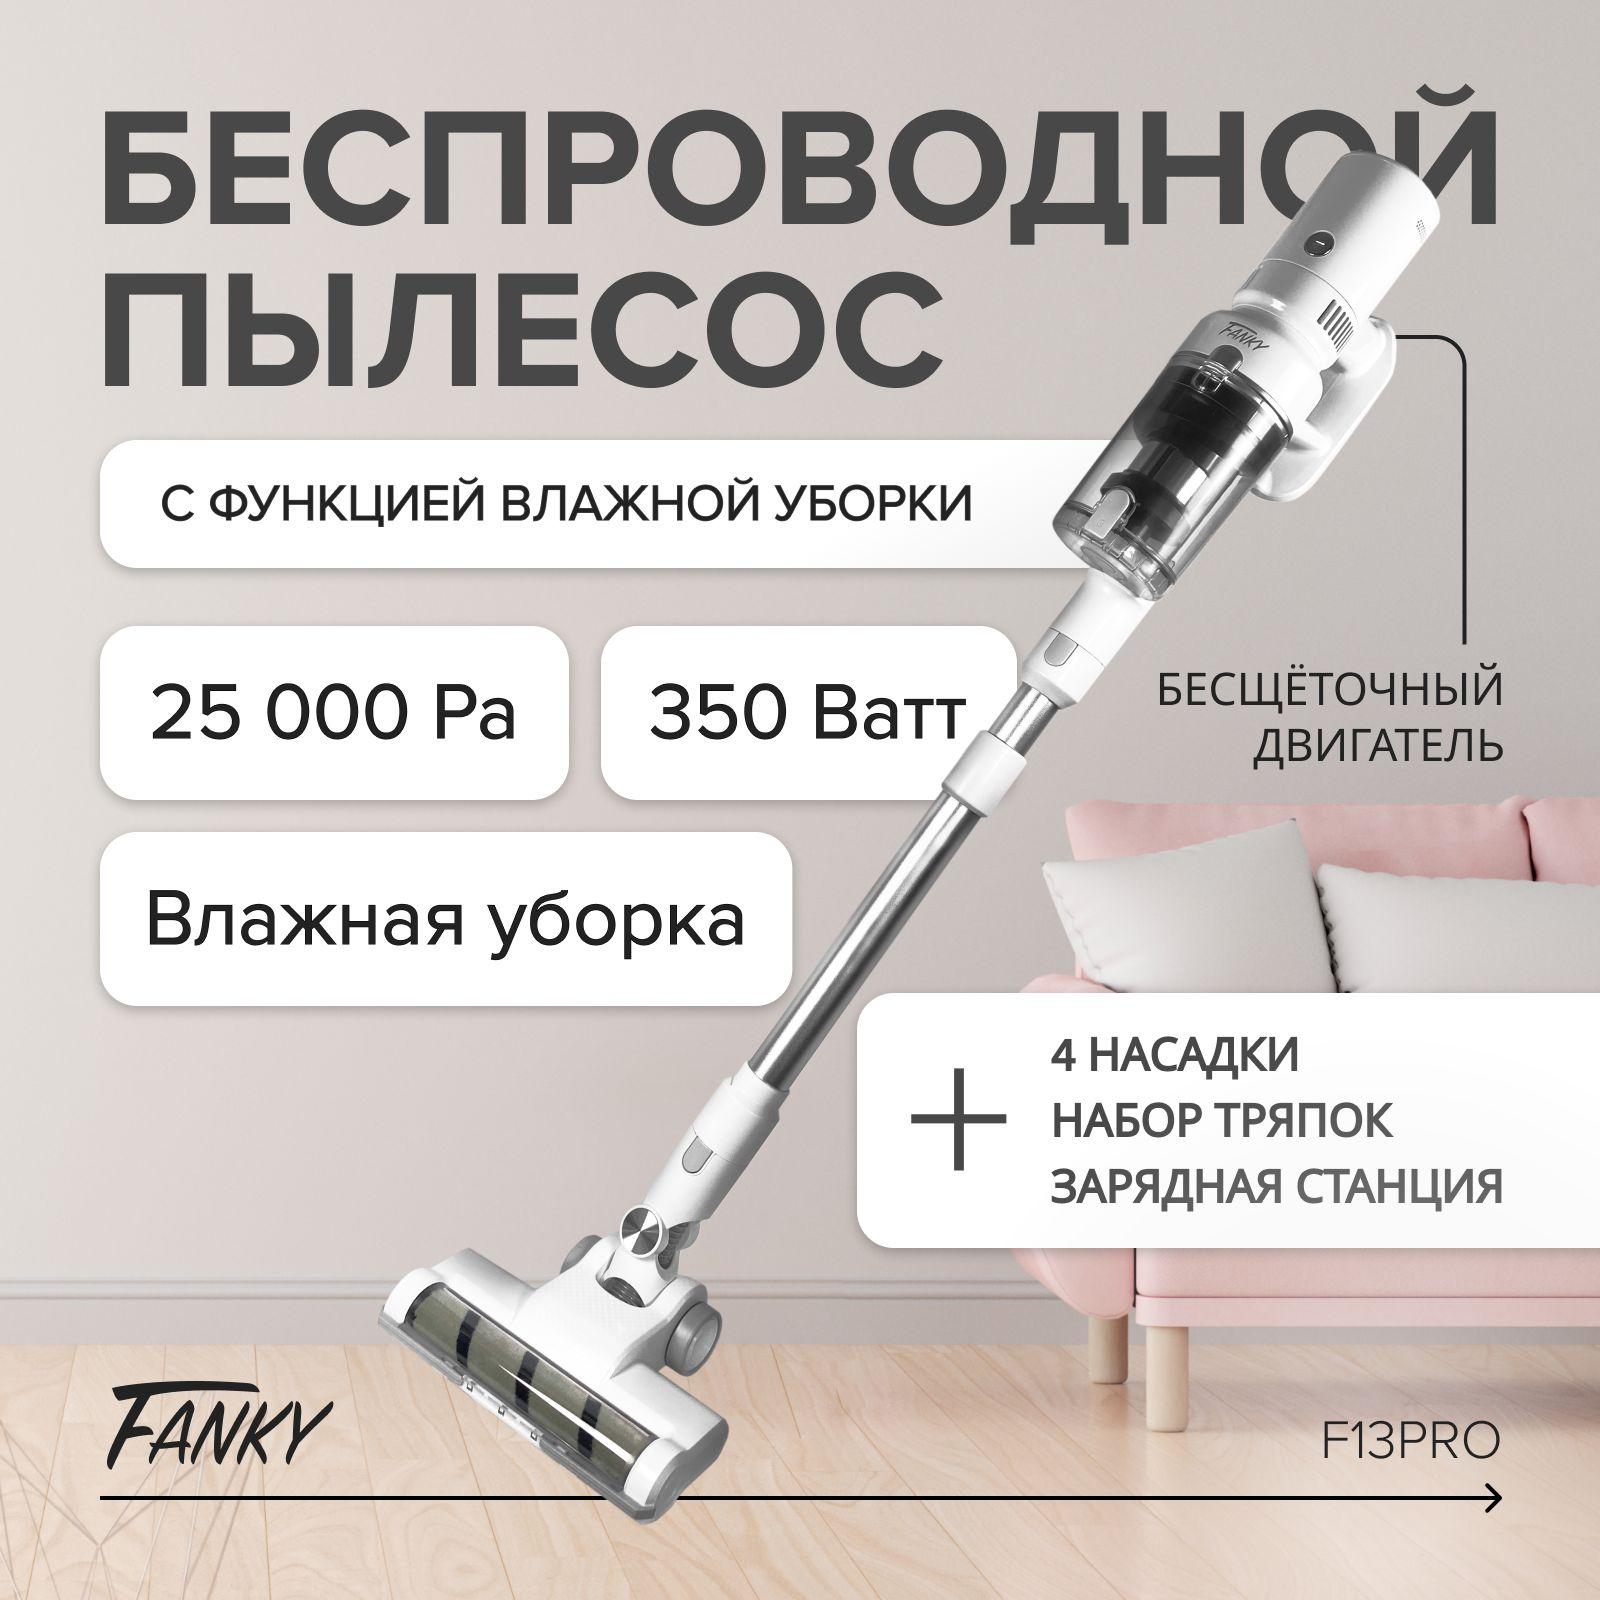 Fanky | Пылесос моющий беспроводной вертикальный Fanky 350 Вт для дома с сухой и влажной уборкой